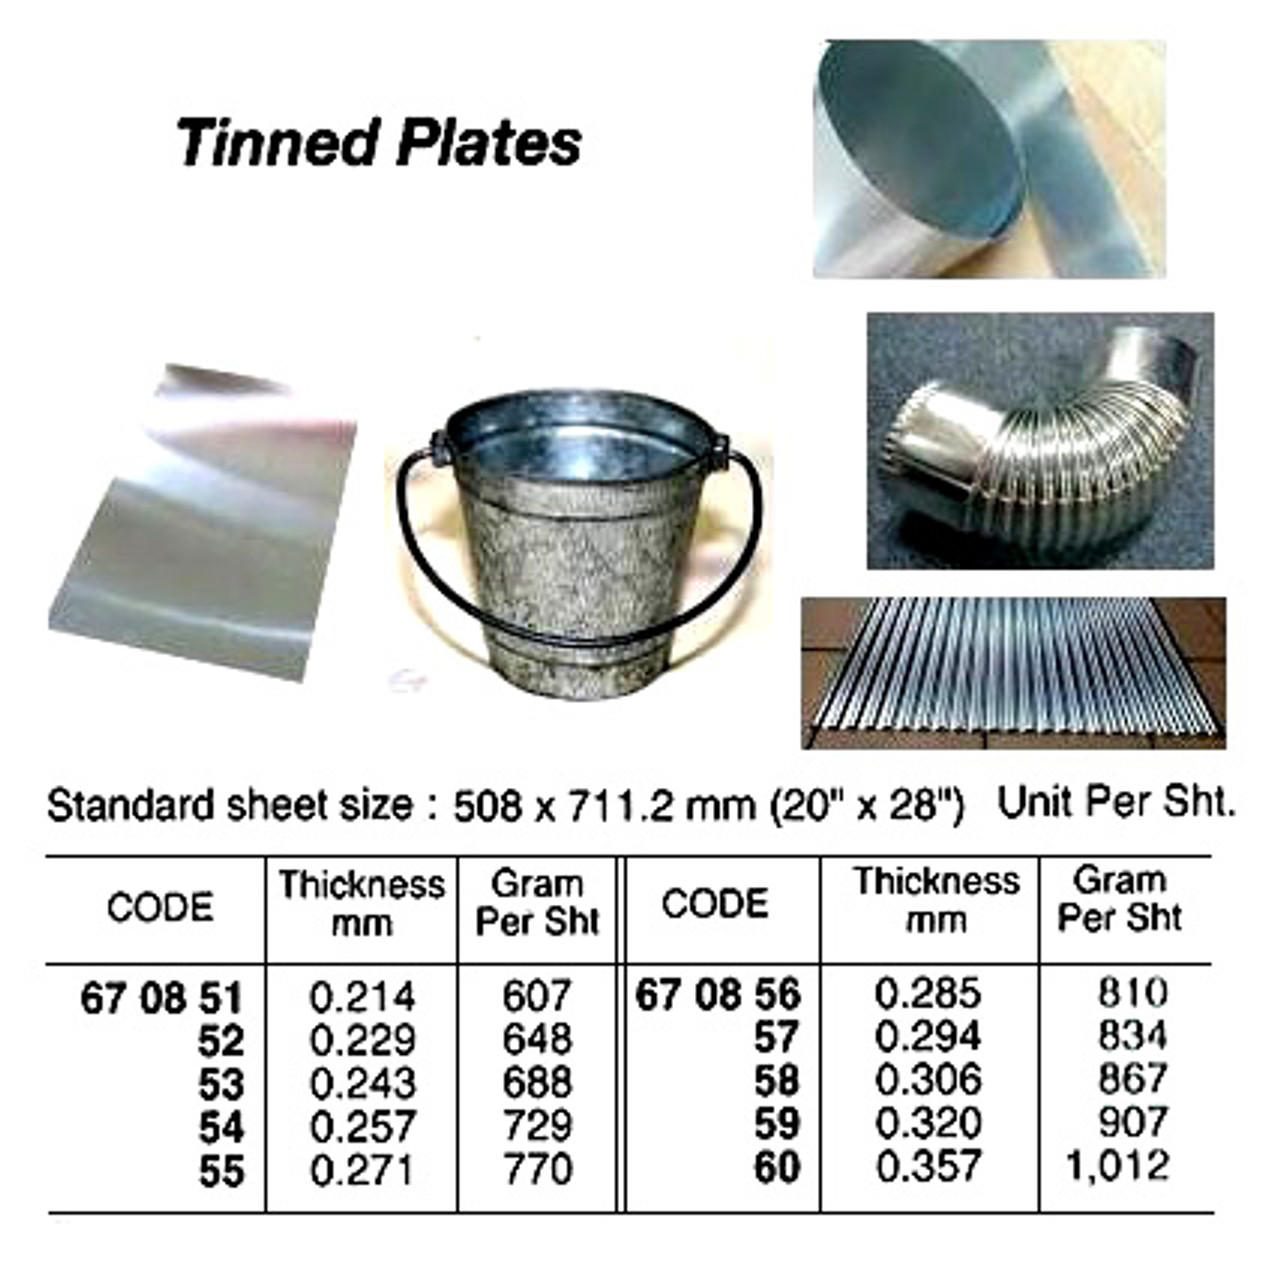 IMPA 670858 Tinned plates 717x511x0,30 mm